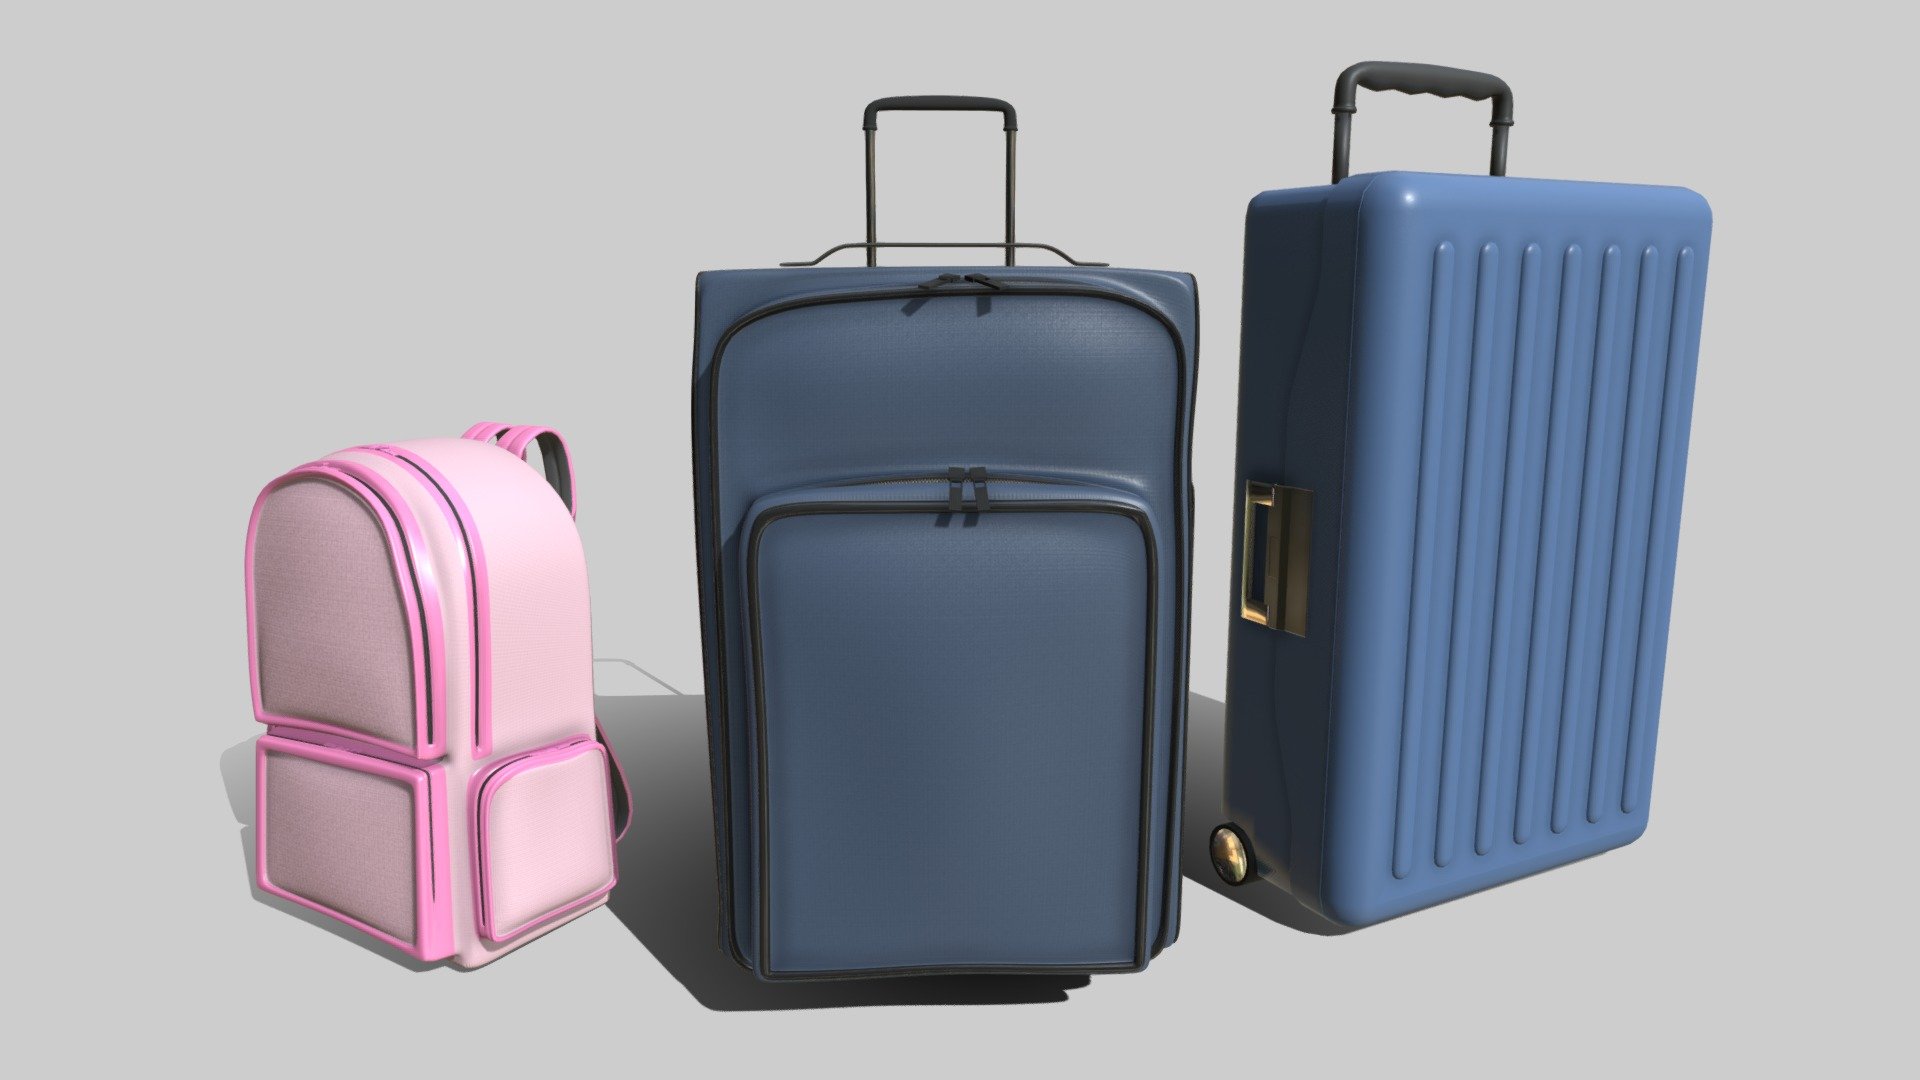 Luggage i modeled in Blender 3d model